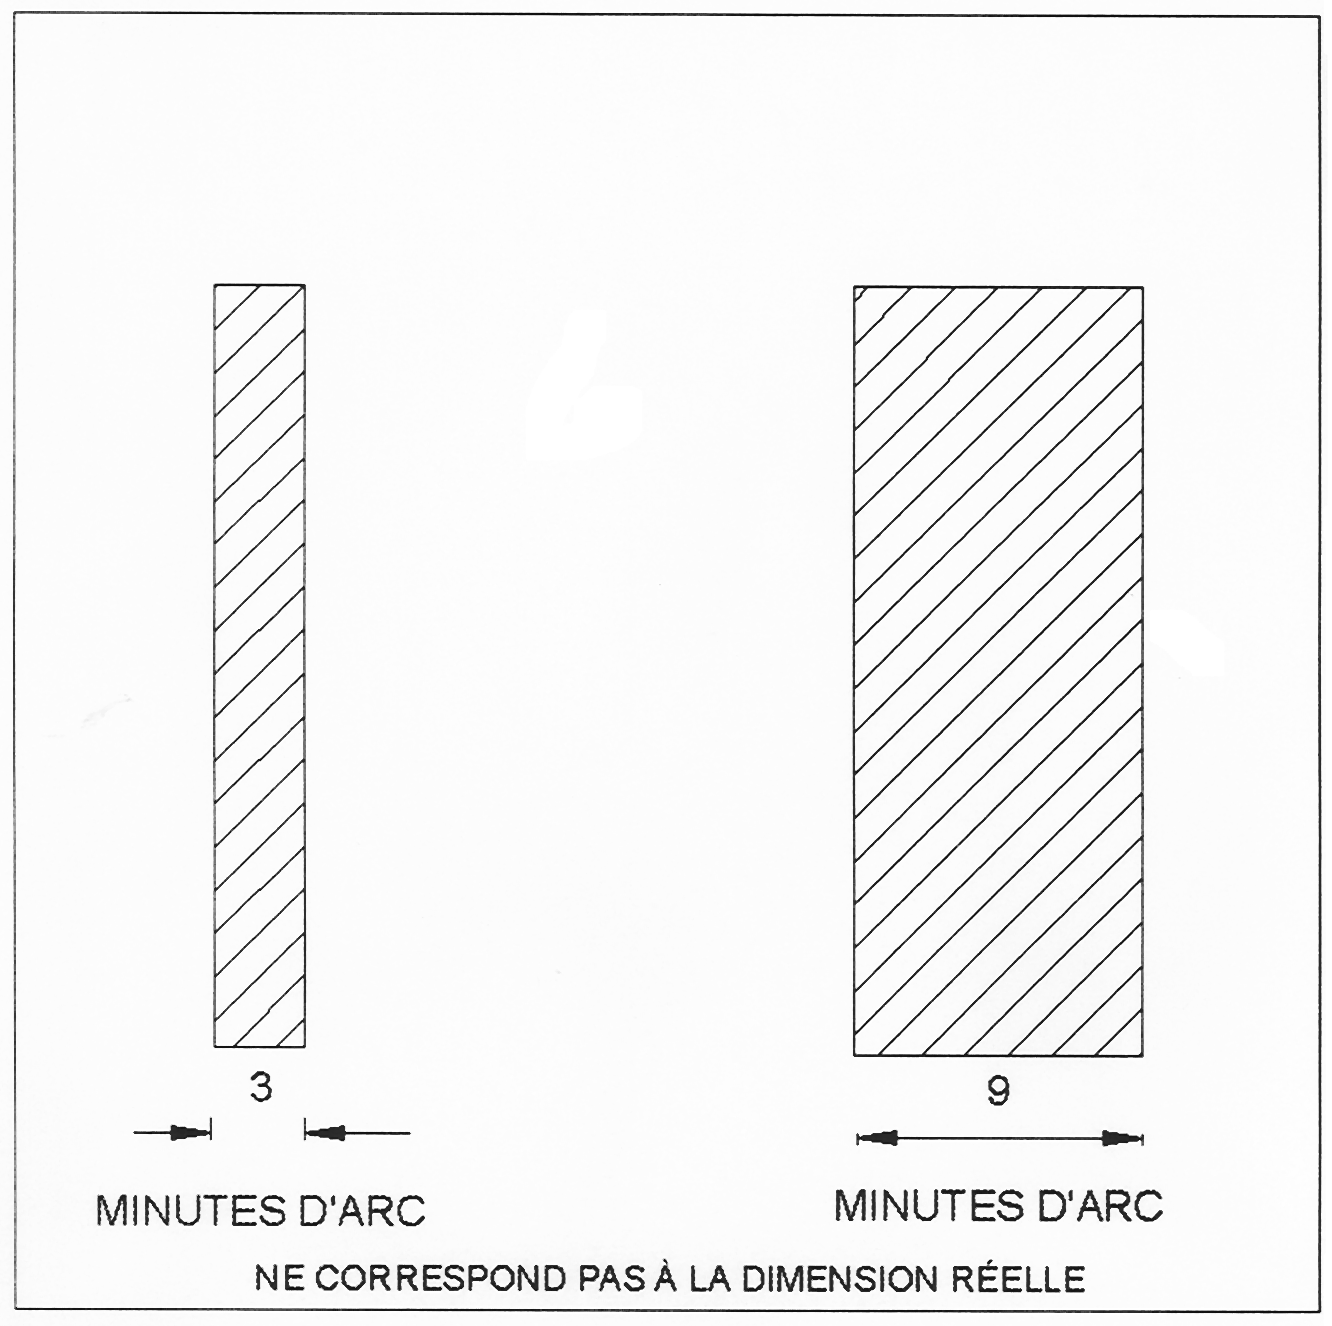 Diagramme montrant un tableau de comparaison entre 3 et 9 minutes d’arc.